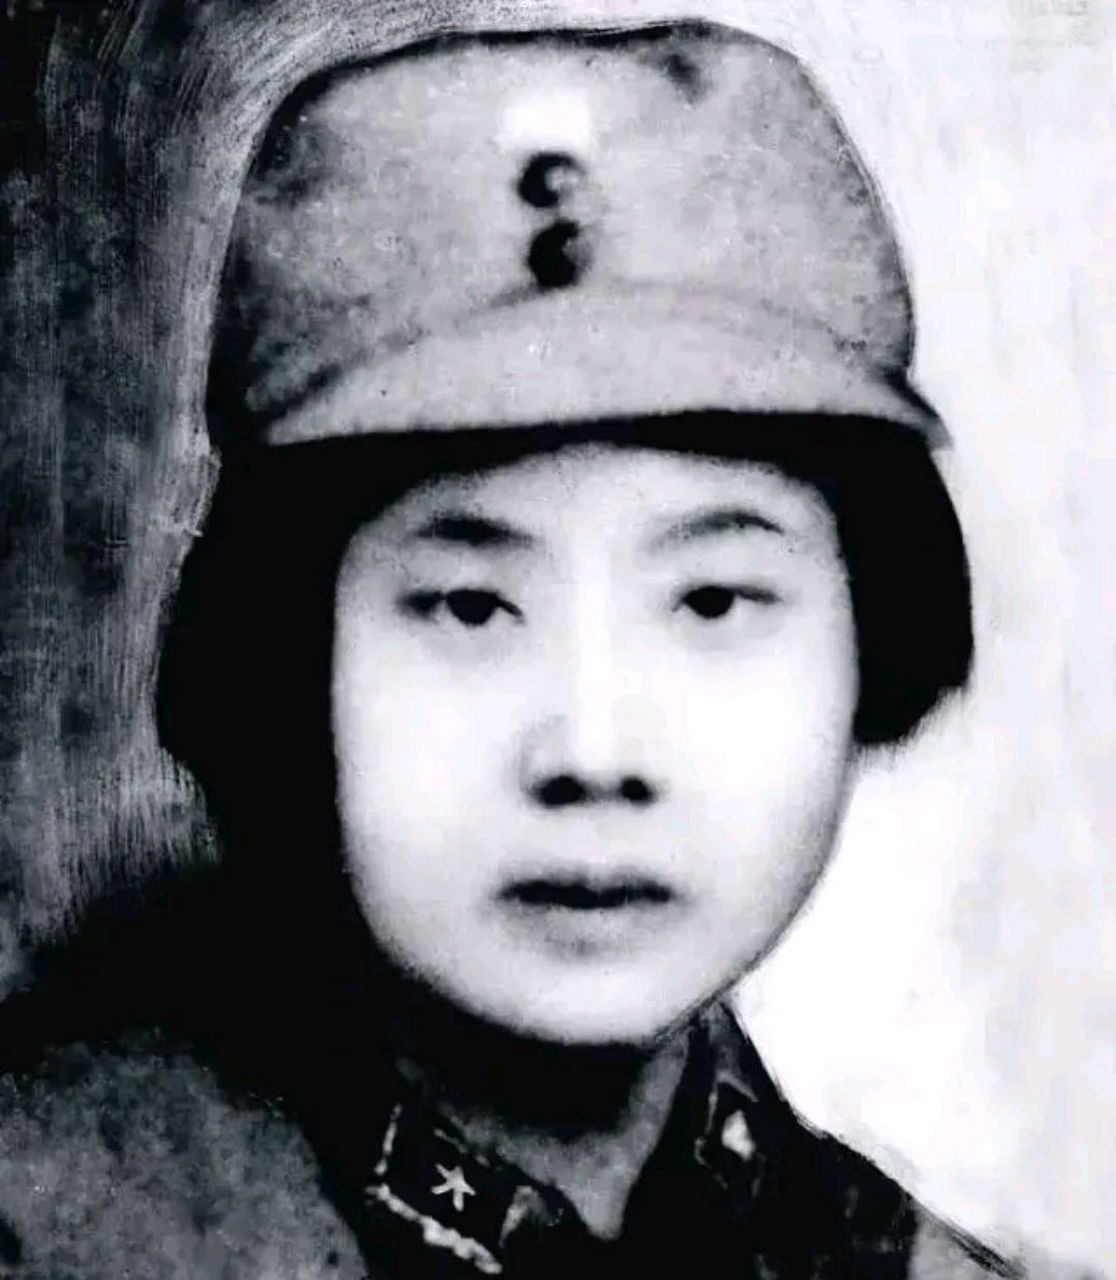 定格23岁,抗日英雄林心平同志被汉奸出卖并受害.